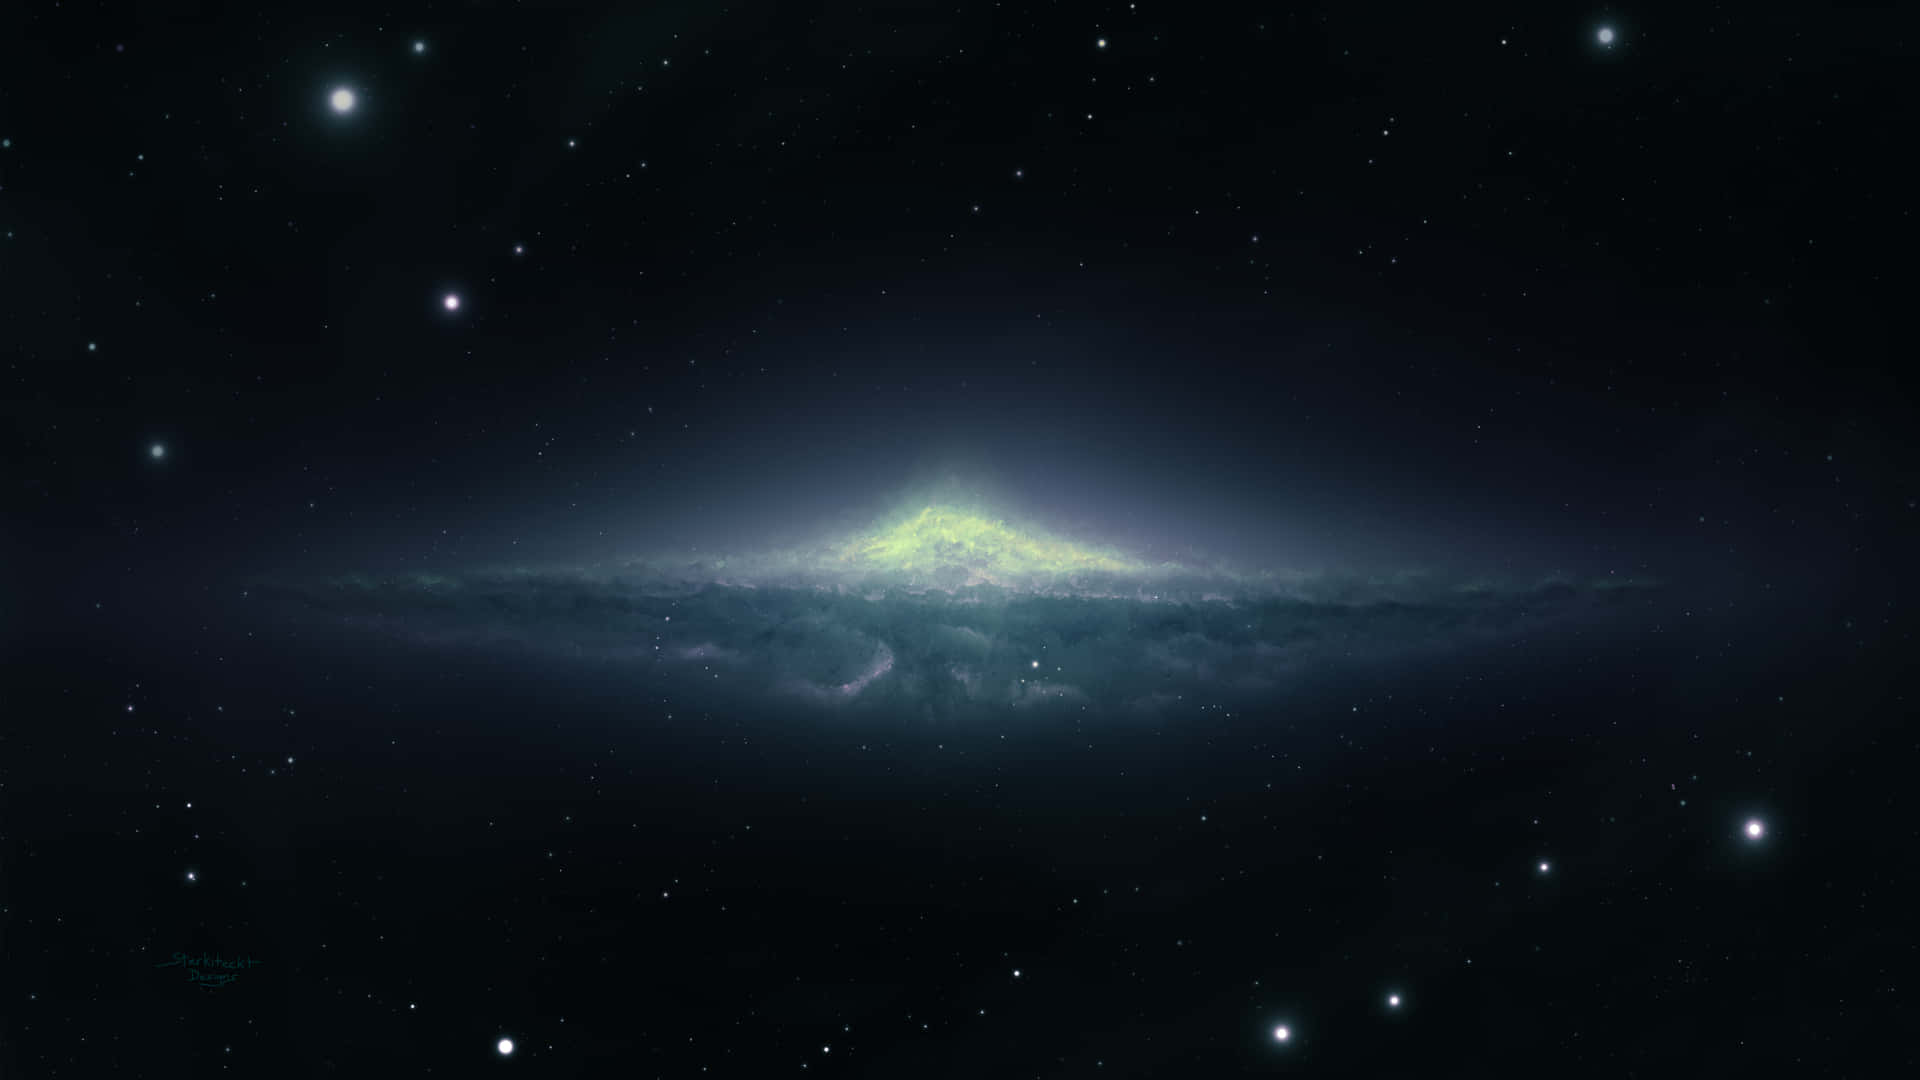 Ottieniuna Vista Ravvicinata Della Maestosa Galassia Di Andromeda In Risoluzione 4k. Sfondo